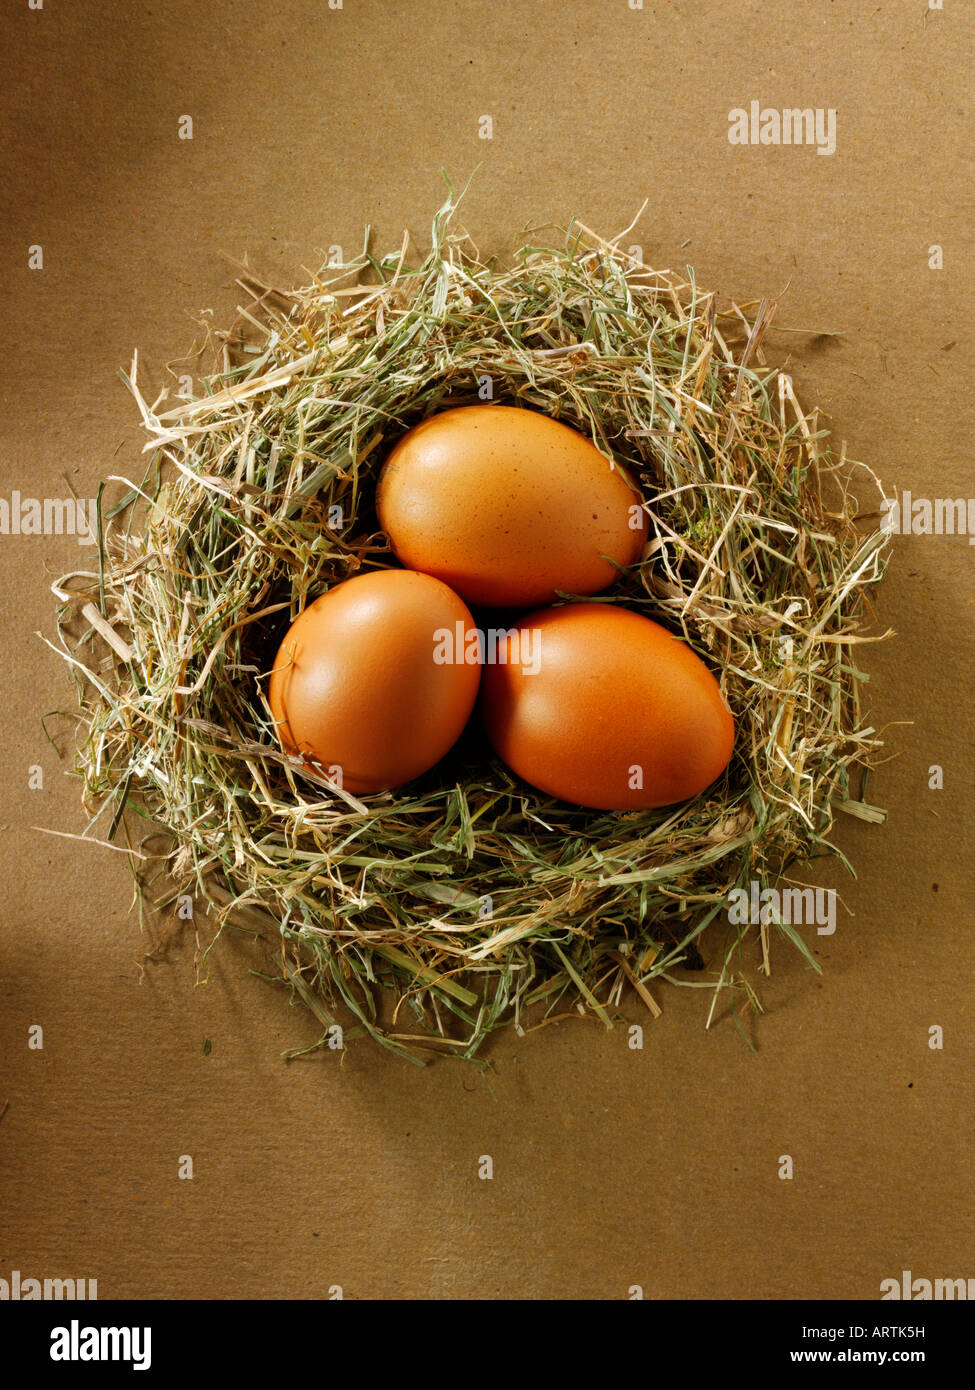 Burford organica marrone le uova di gallina in un nido Foto Stock